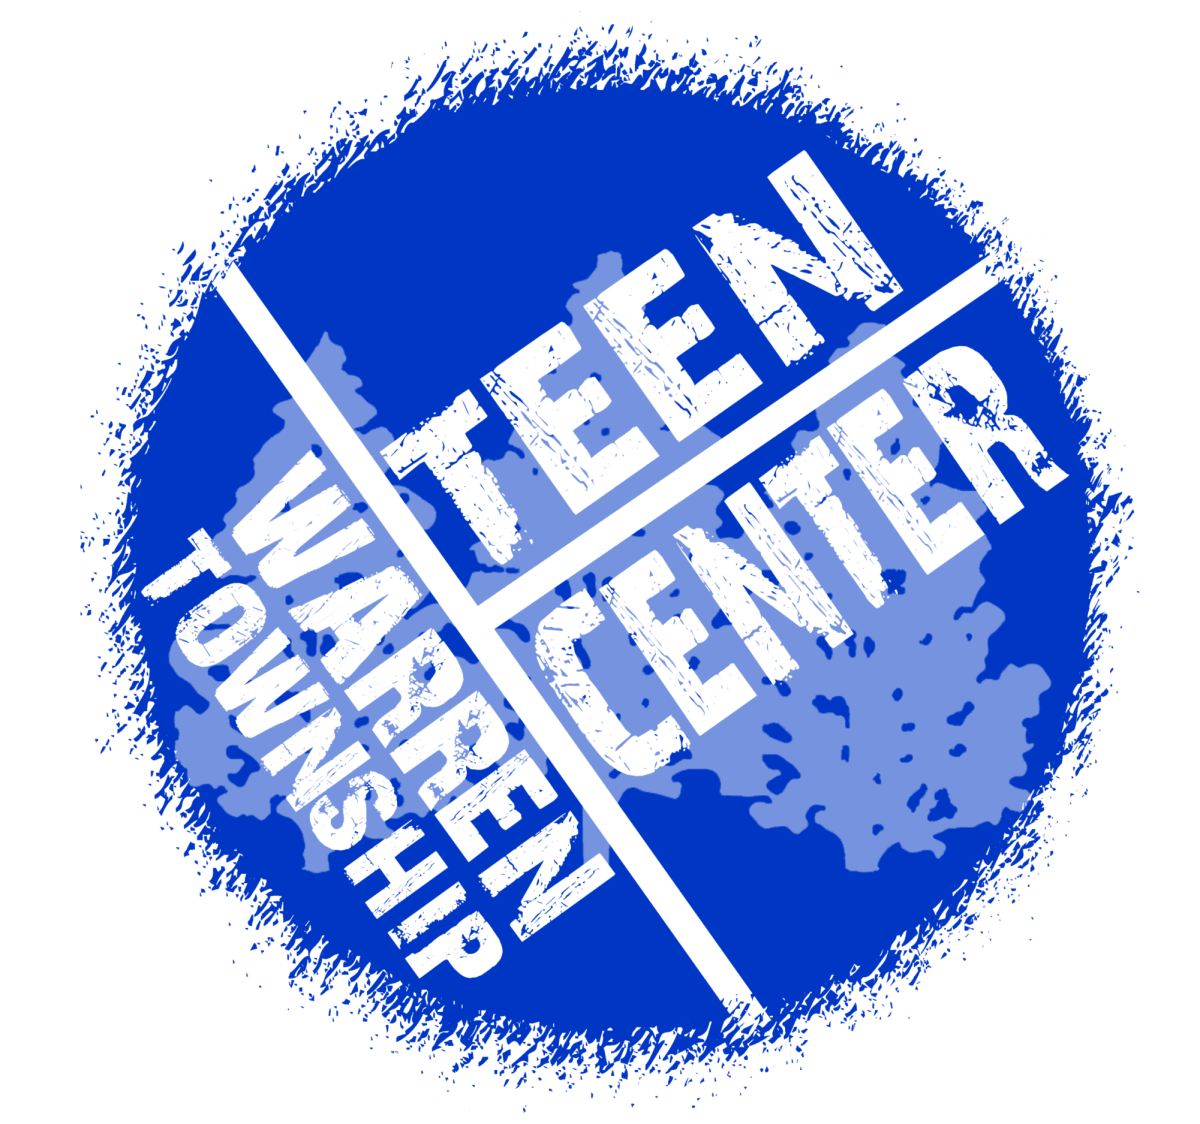 A Quick Look At The Warren Township Teen Center